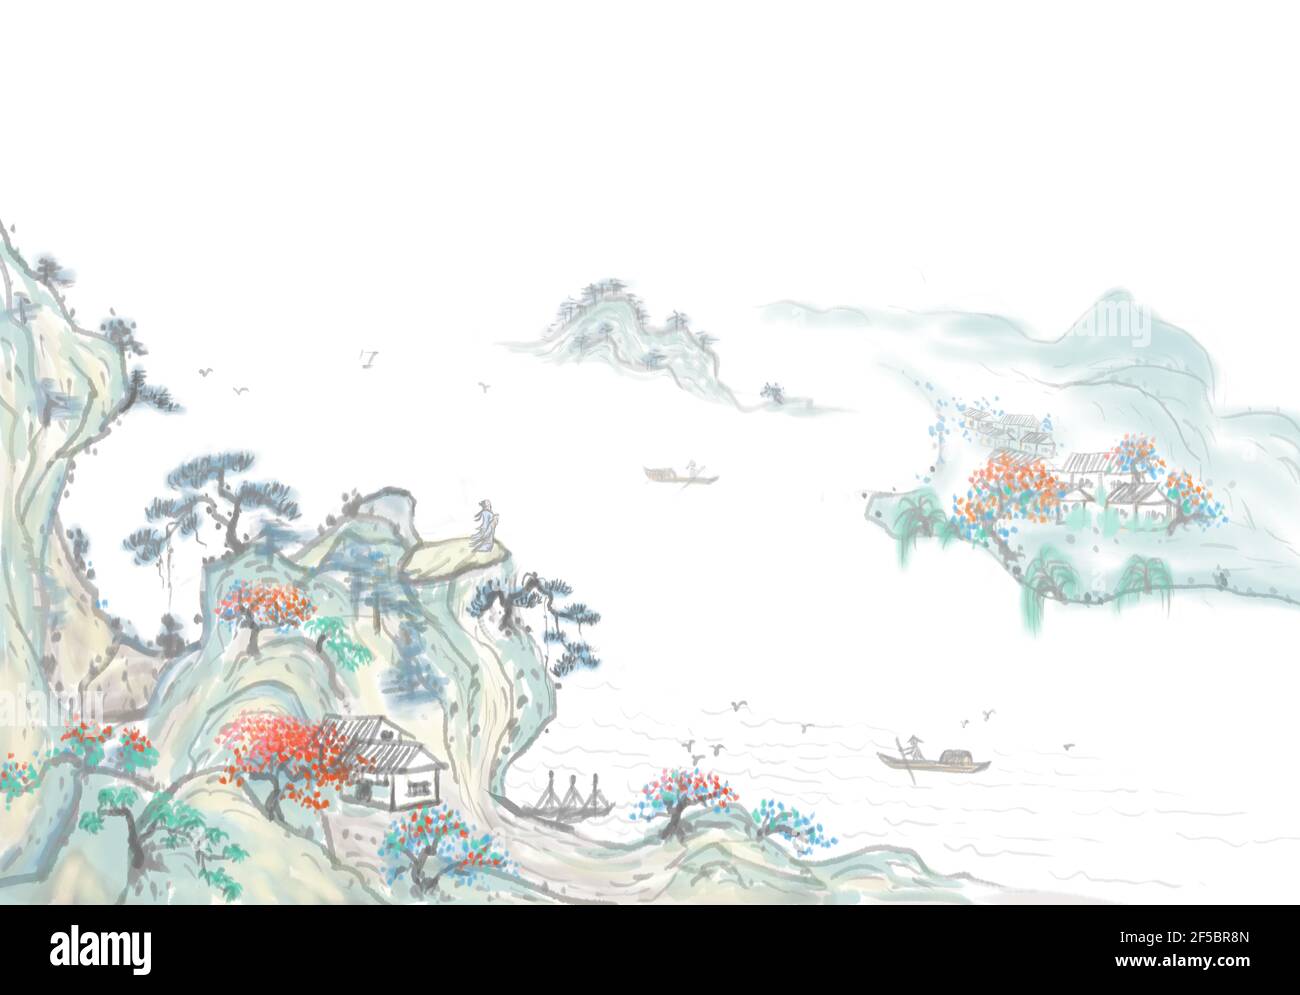 Une conception artistique distante de la peinture zen Ink paysage Banque D'Images